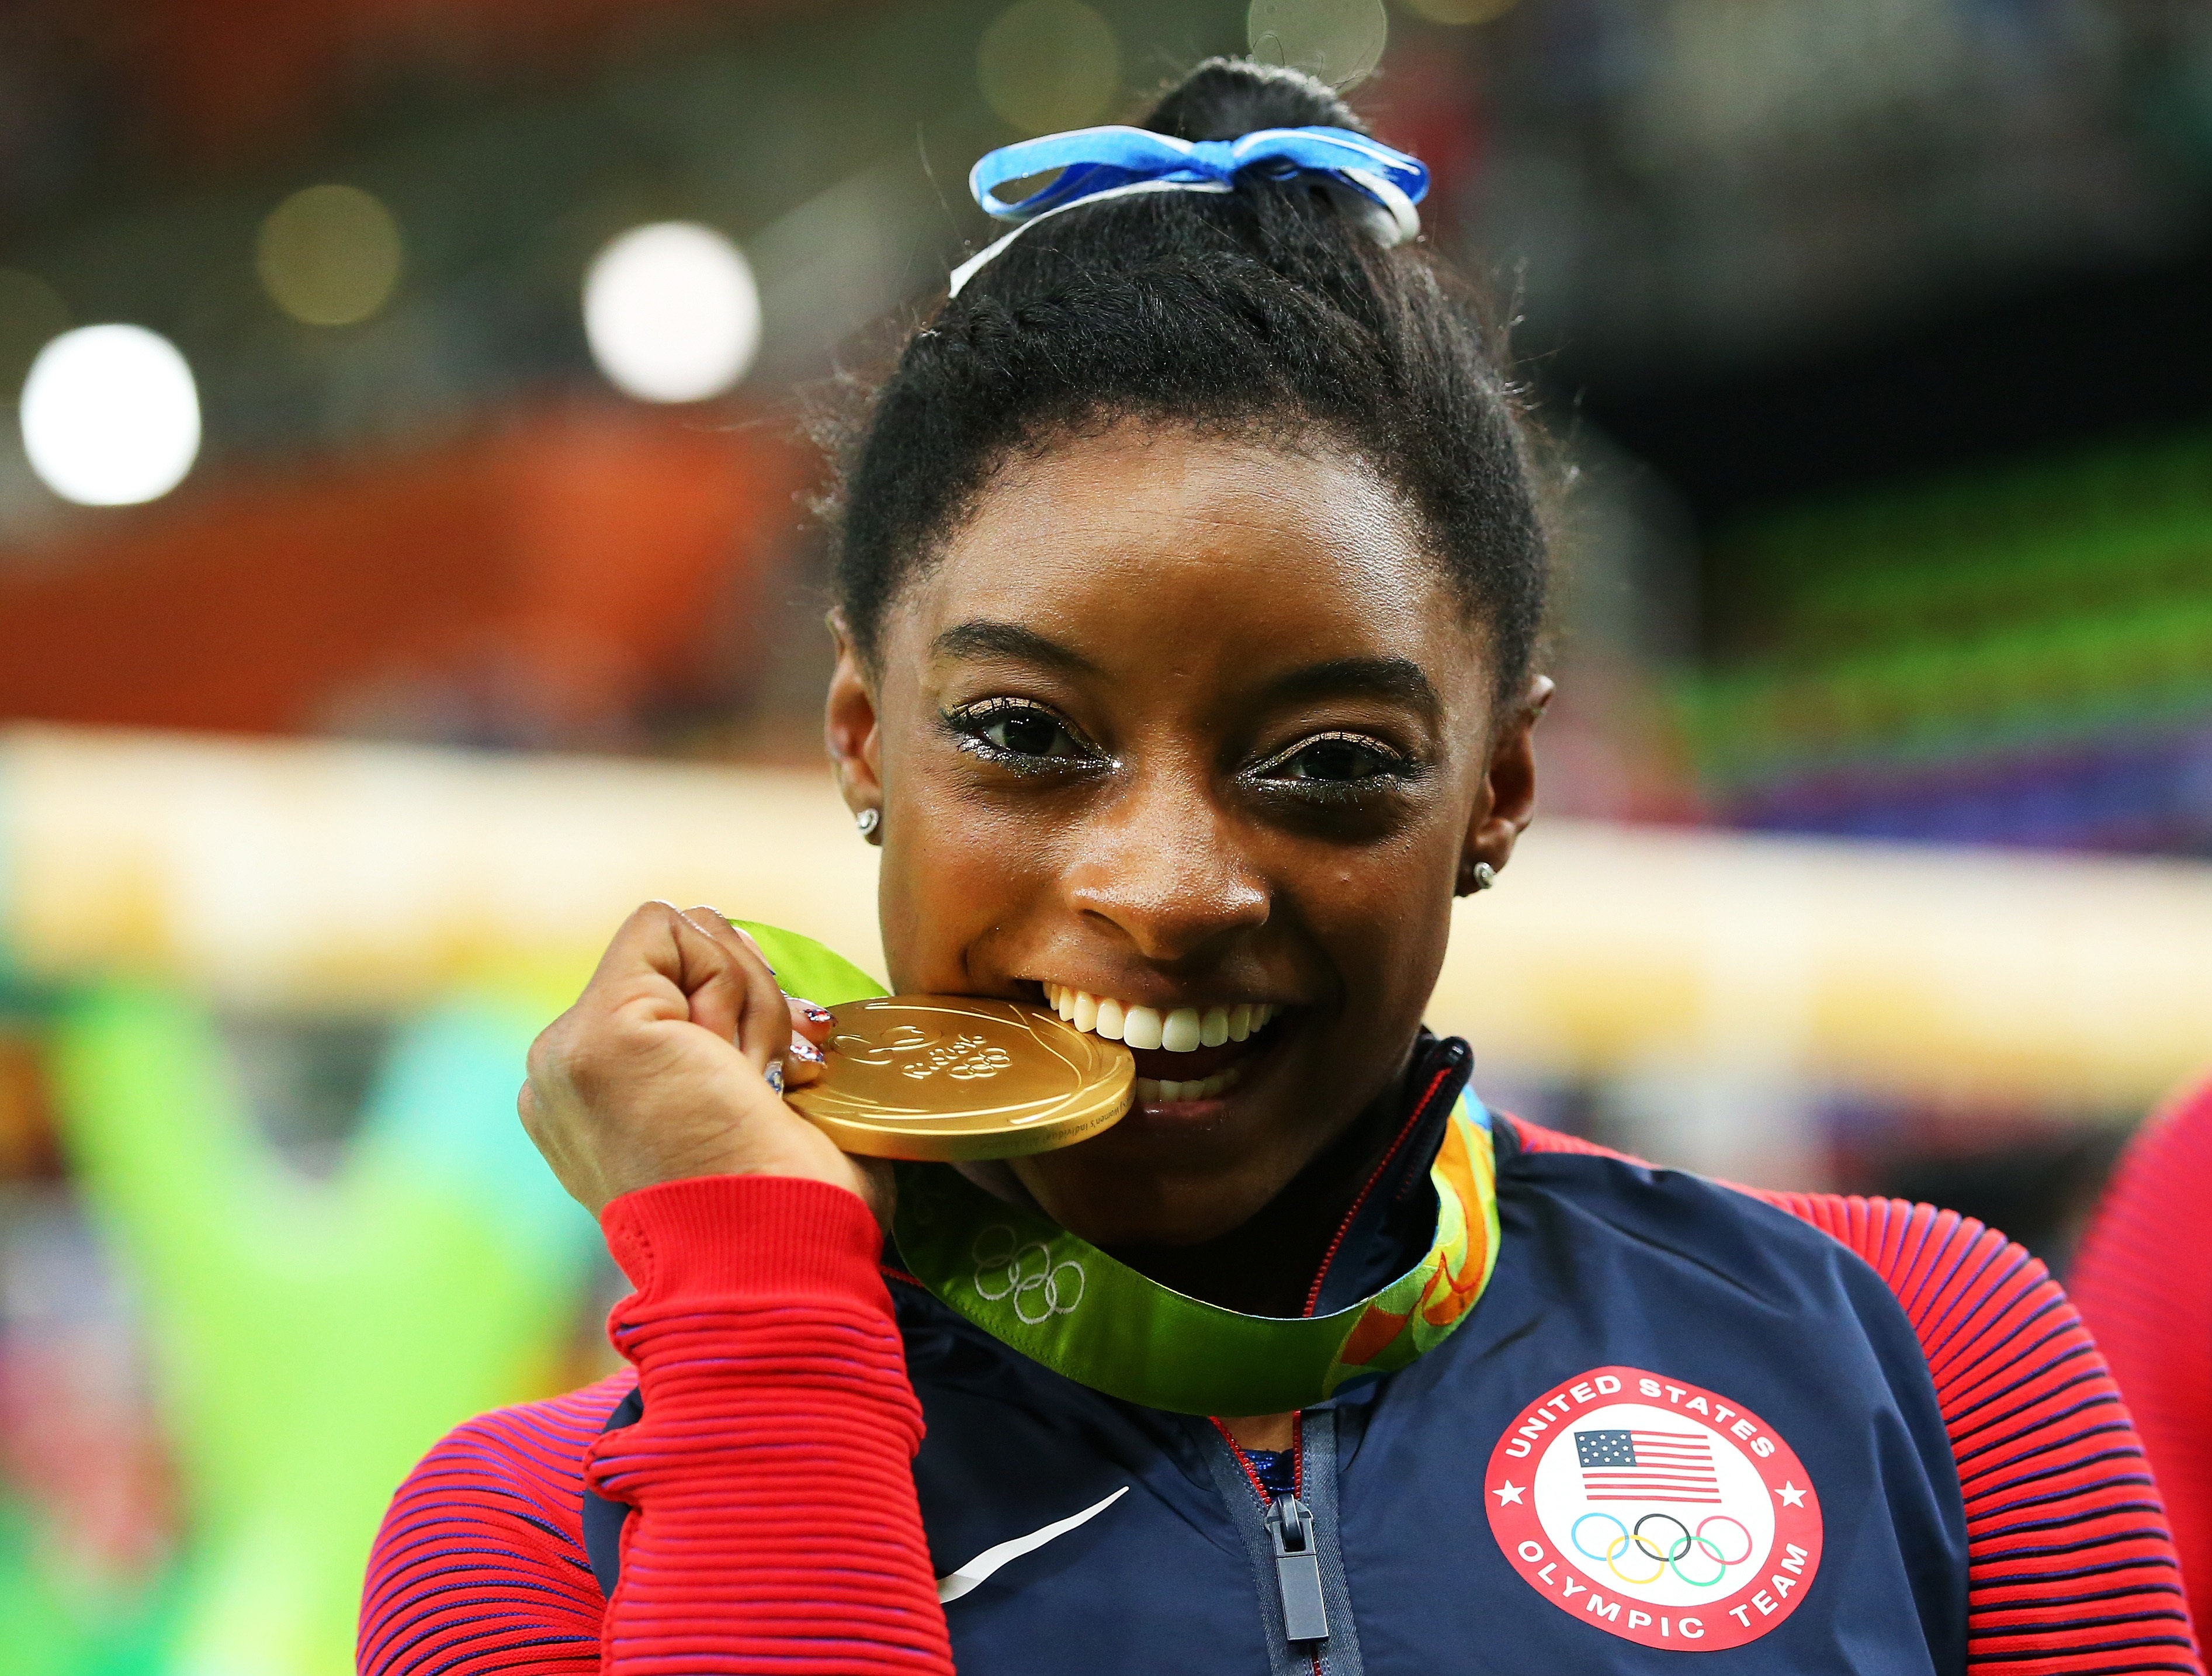 Състезателката по спортна гимнастика Симон Бейлс, за която хакери твърдят, че взема допинг, се представи отлично на Олимпийските игри в Рио, където завоюва четири златни медала. Тя носеше и флага на САЩ на церемонията по закриването на Игрите.